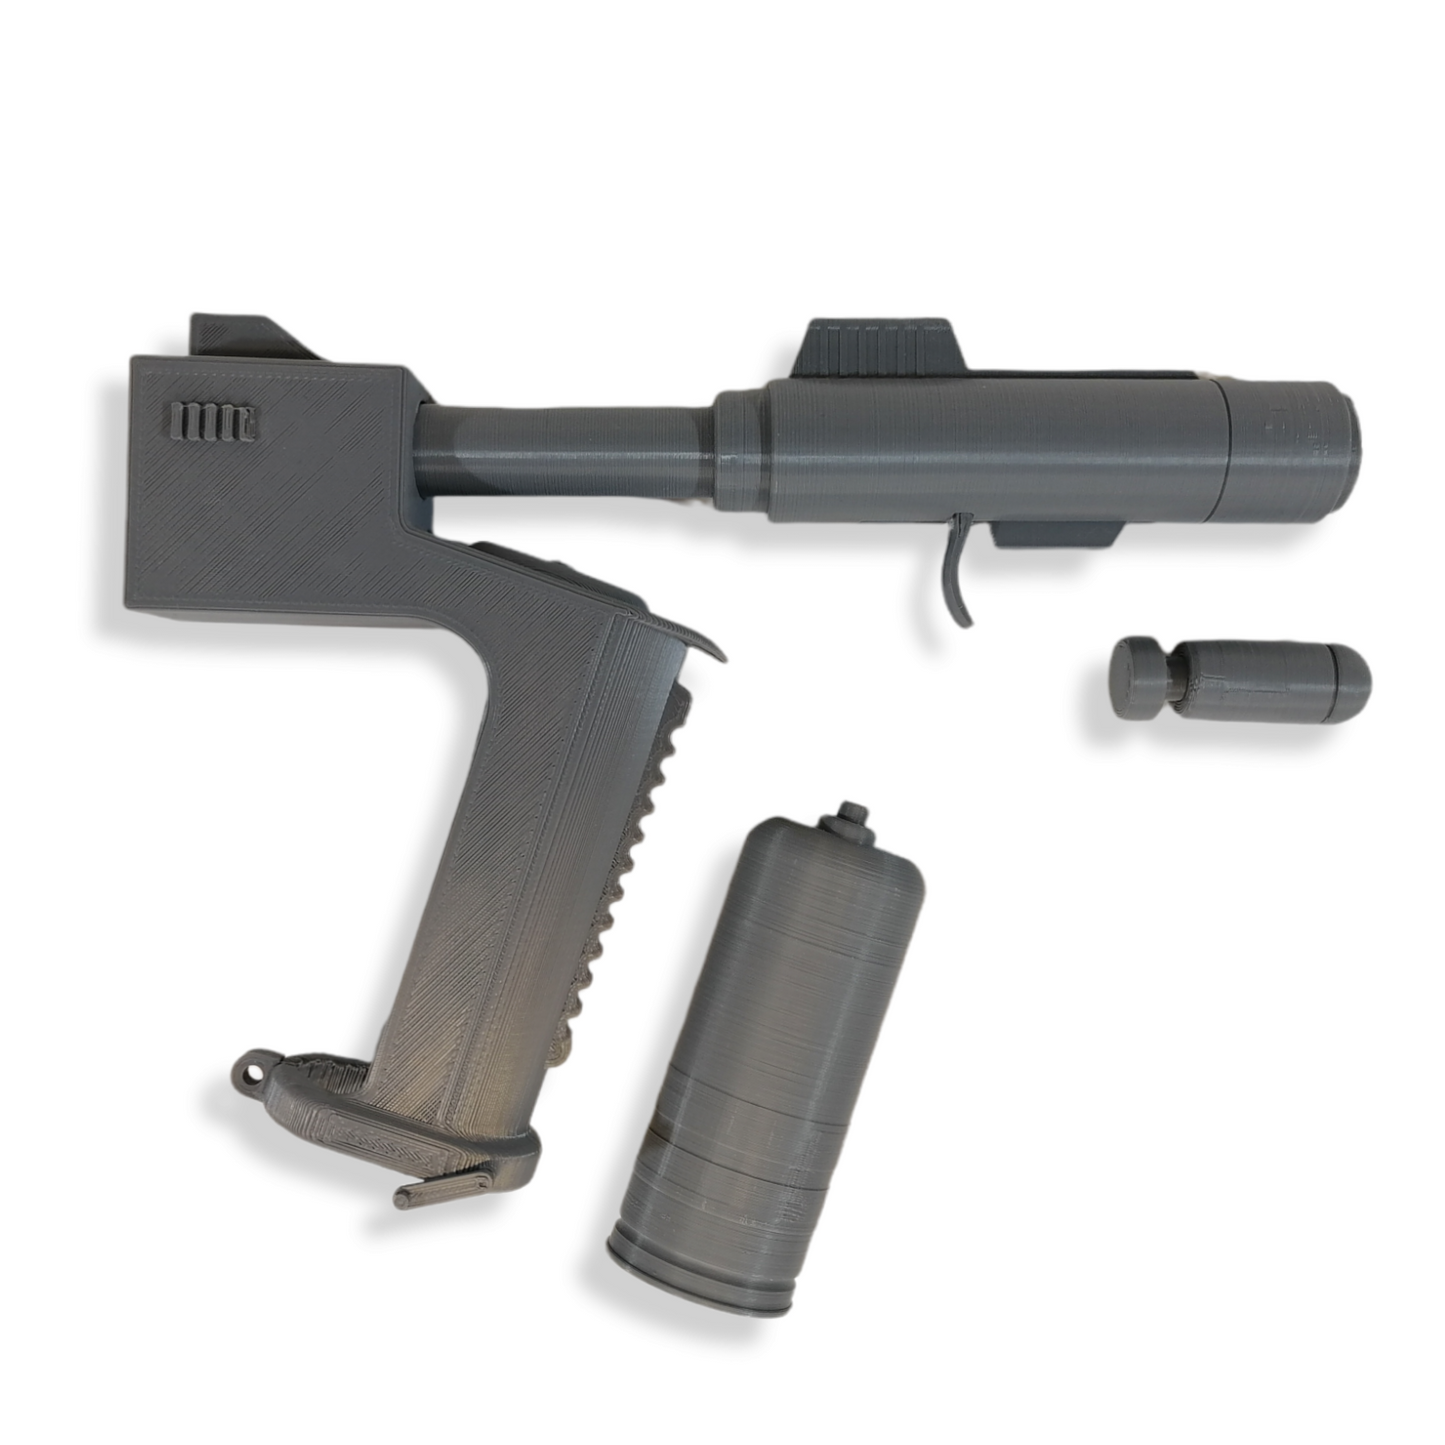 SHARK GUN - Film Prop - 3D Printed Replica